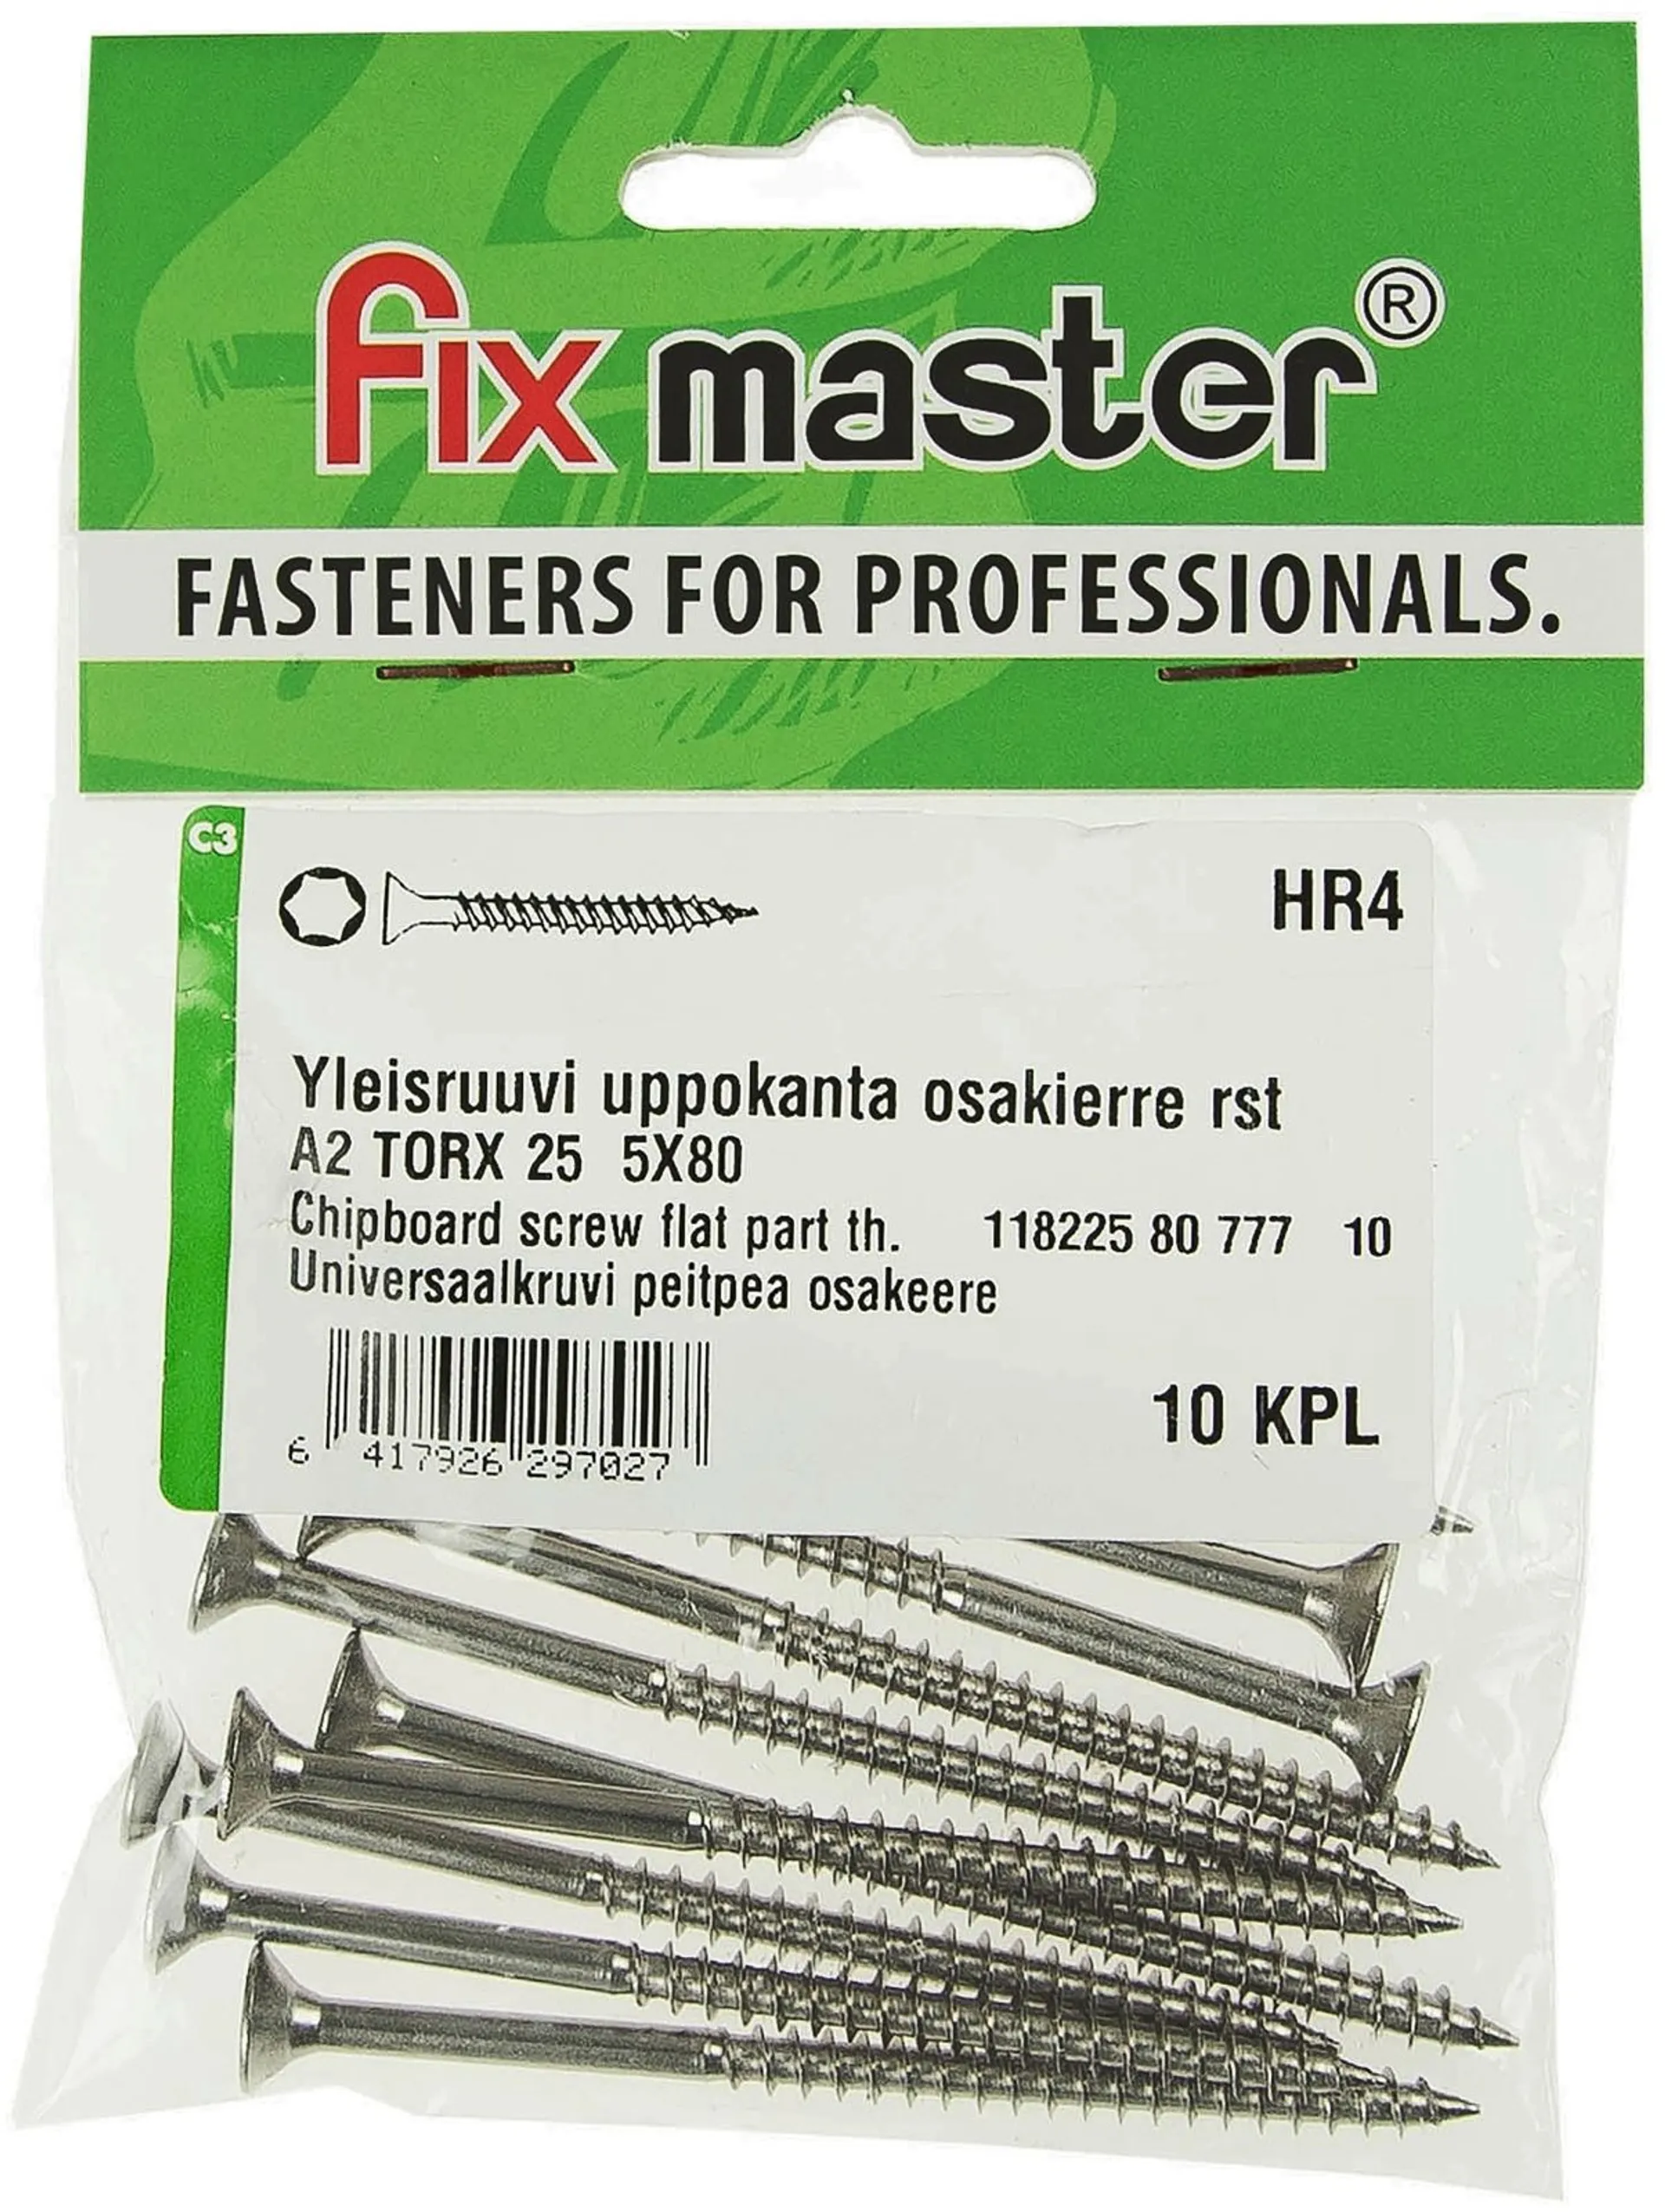 Fix Master yleisruuvi uppokanta osakierre 5,0X80 A2 torx25 10kpl